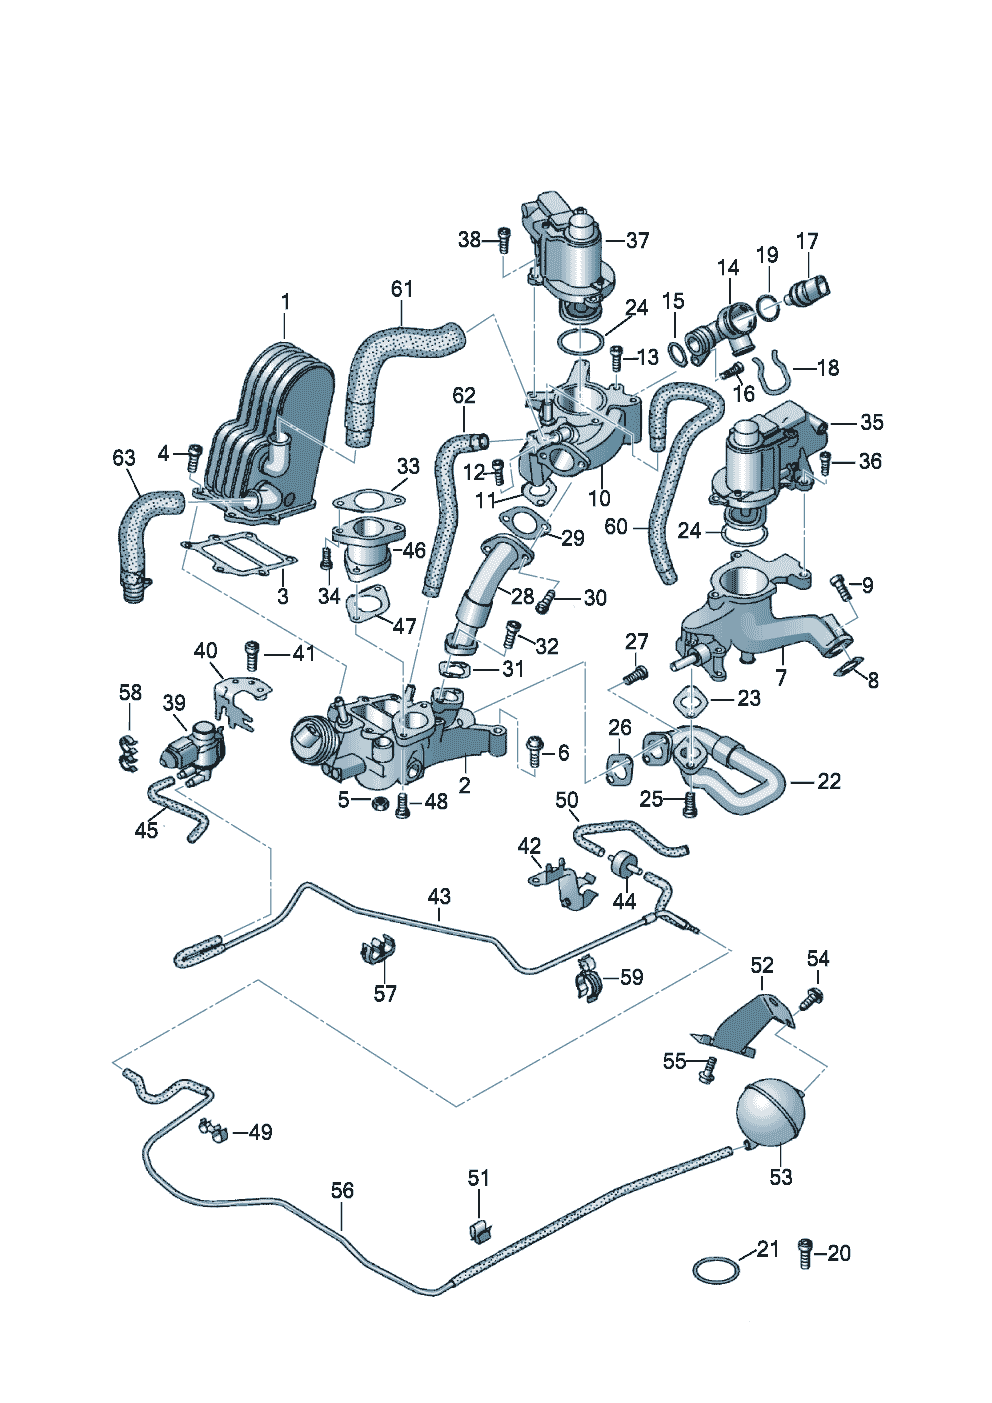 systeme de depressionRecyclage des gaz echappement 4,2l - Audi Q7 - aq7